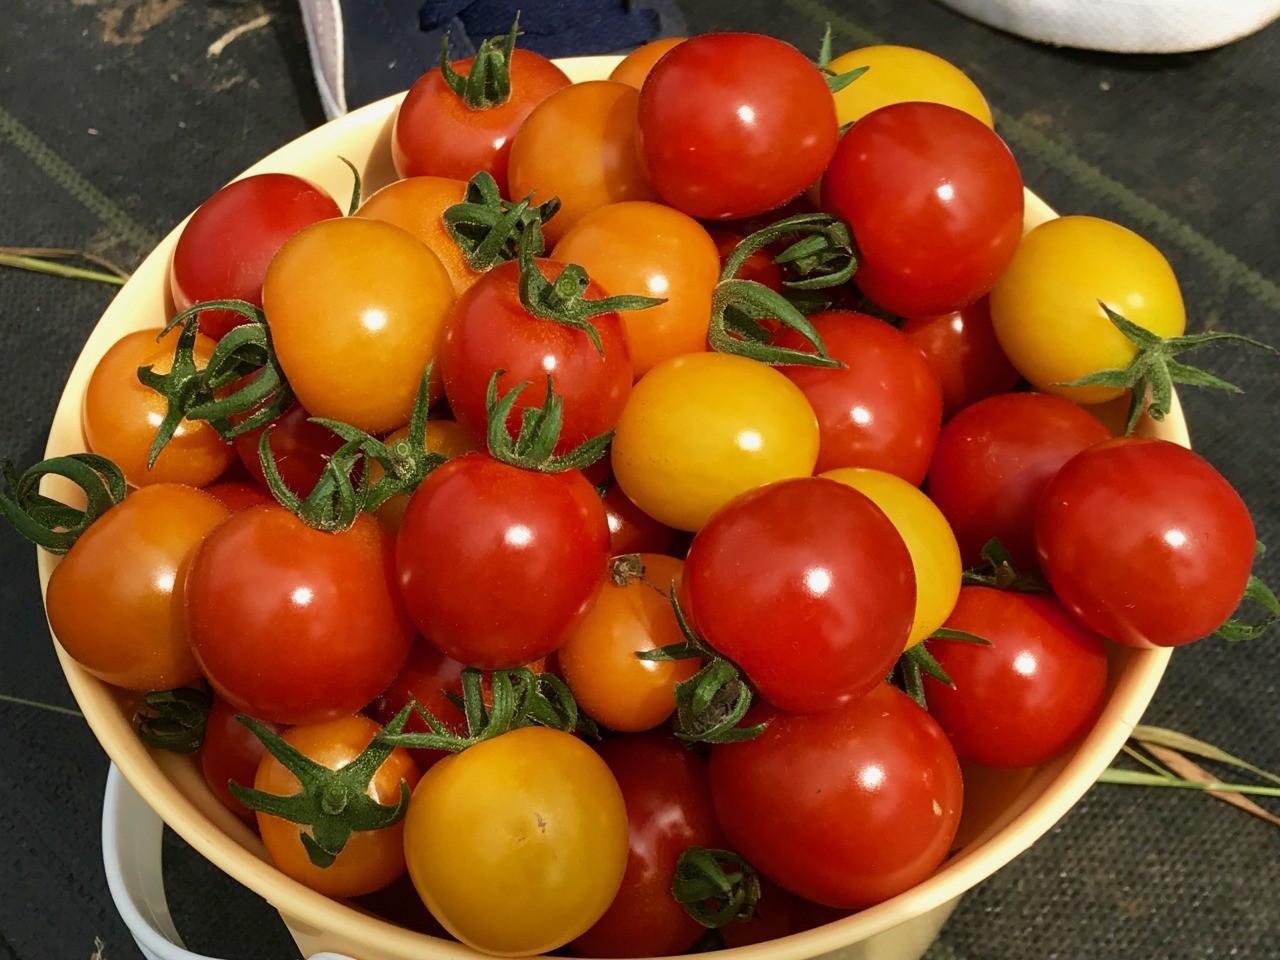 【夏の土日限定!】 いわき農園の5色のミニトマト狩り